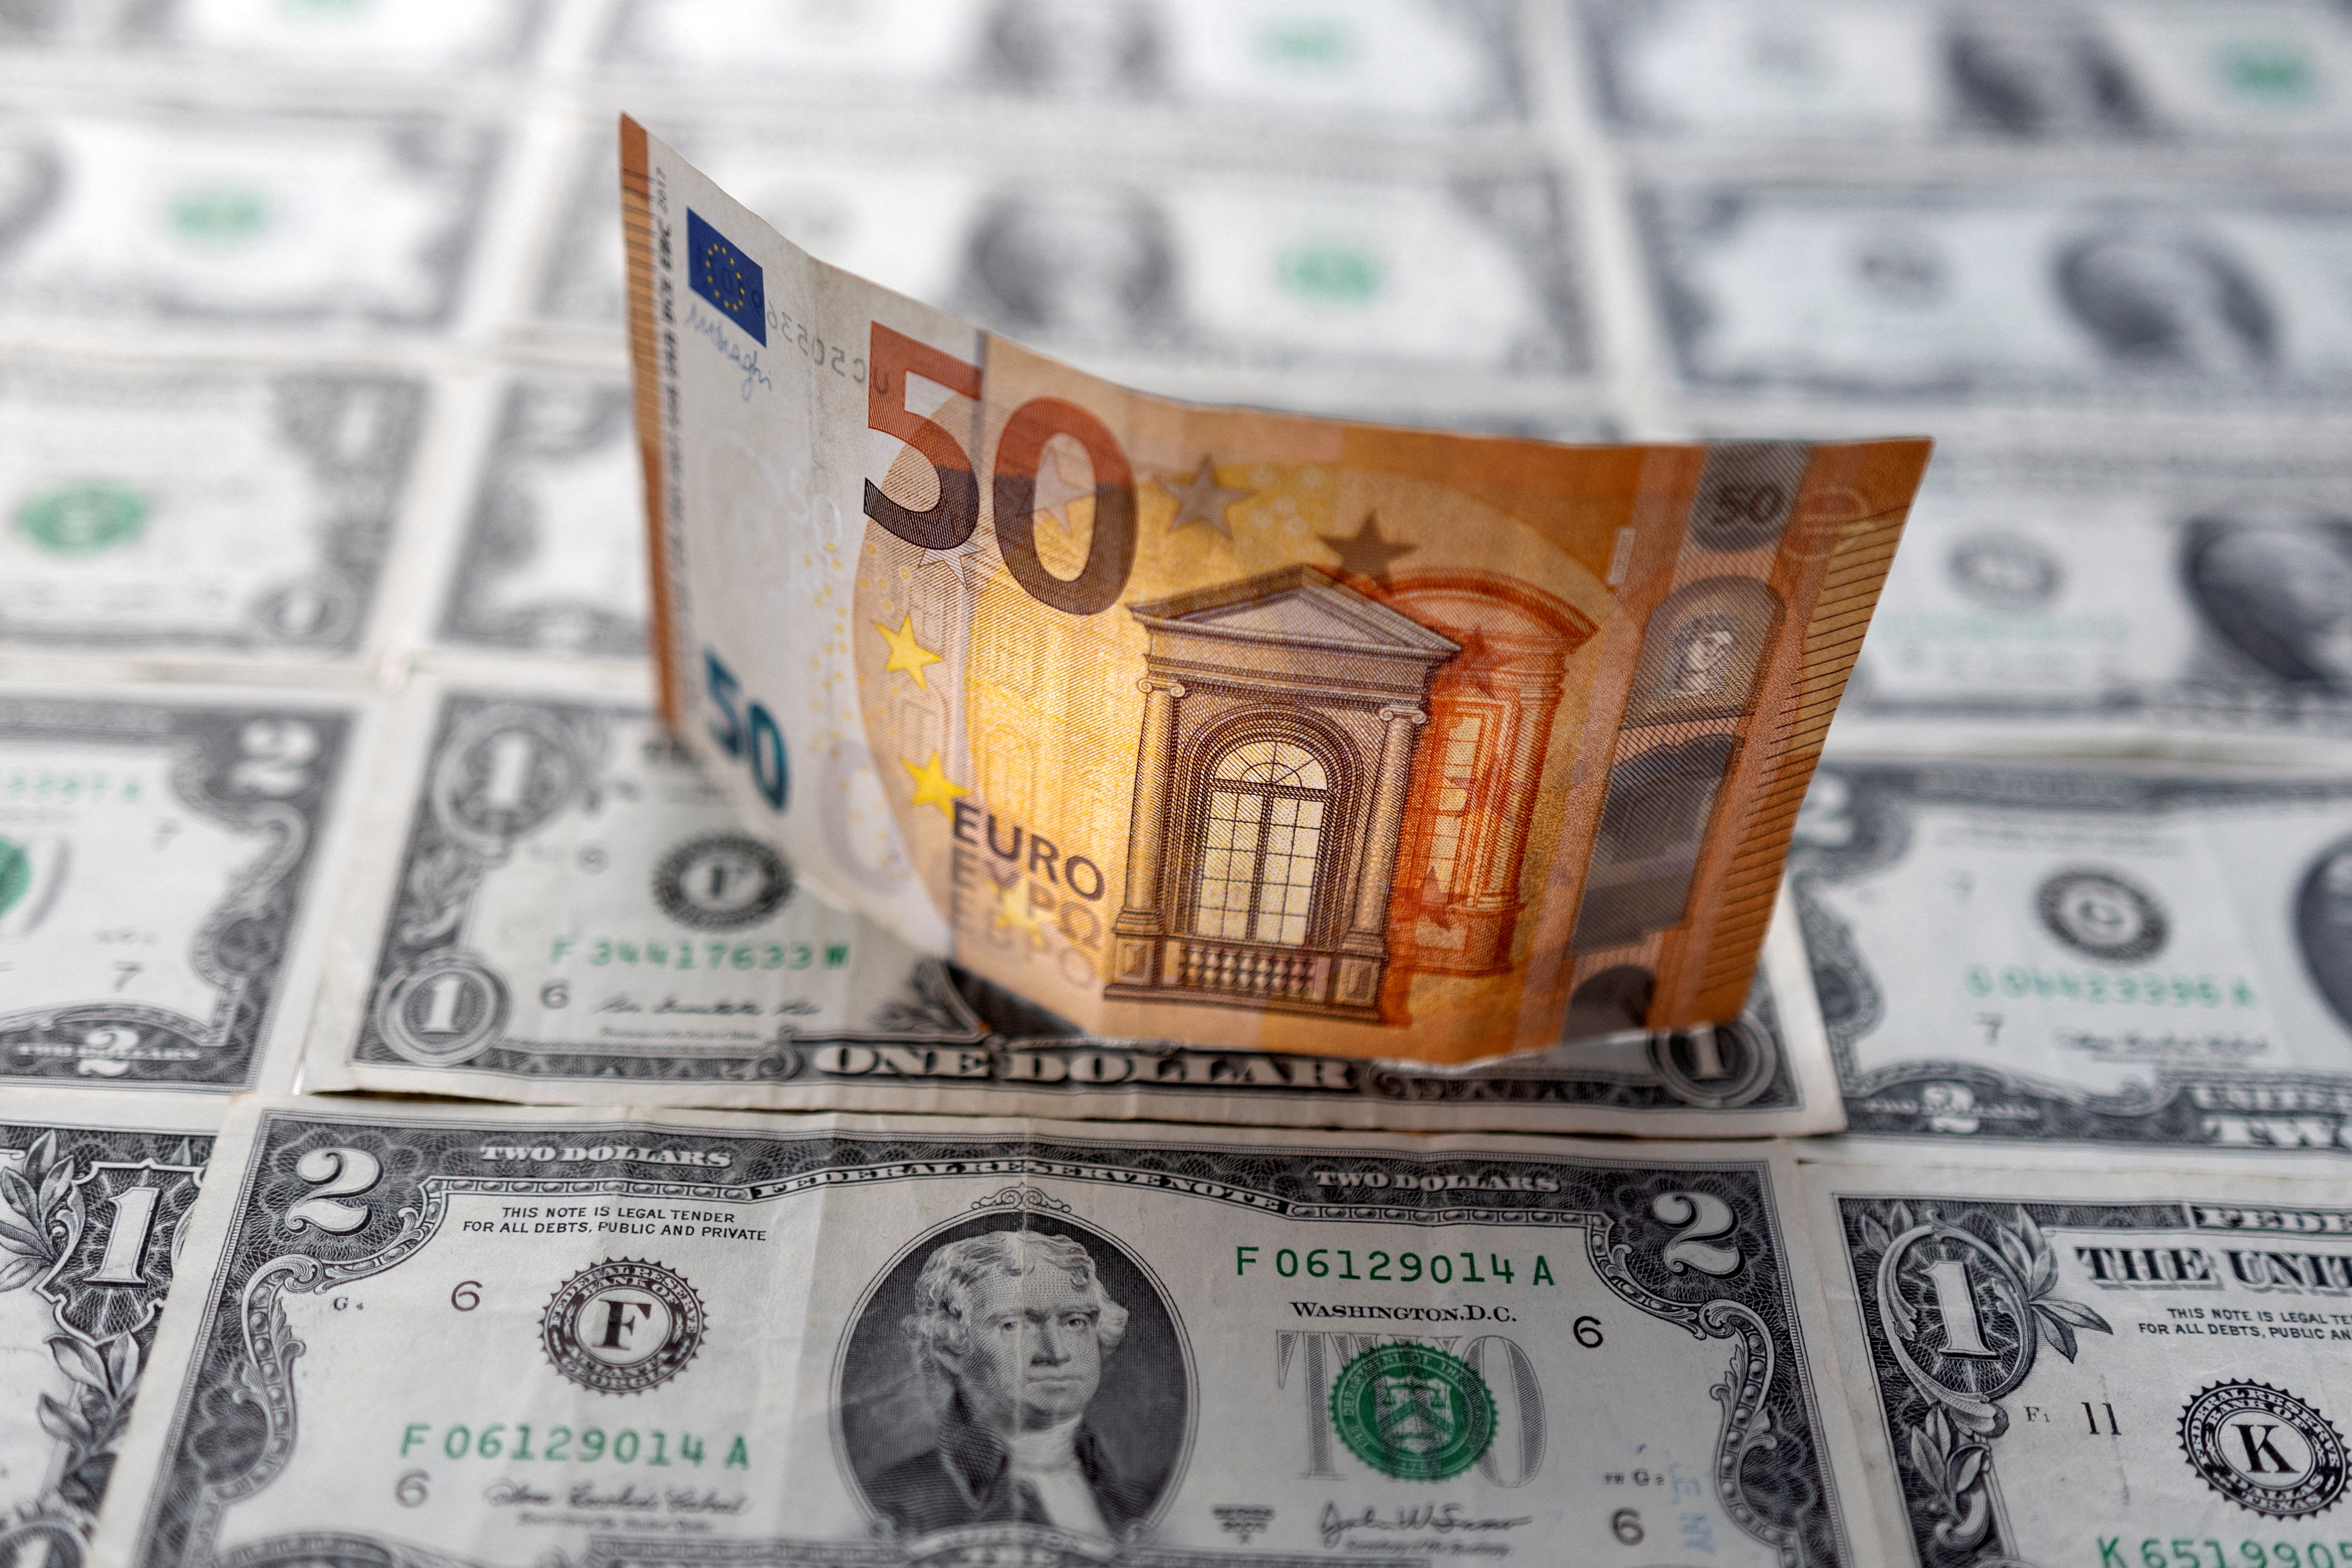 Euro và USD là hai loại tiền tệ được sử dụng nhiều trên thế giới. Hãy xem hình ảnh để tìm hiểu về sự khác nhau giữa chúng và ảnh hưởng của tỷ giá đến nền kinh tế thế giới.